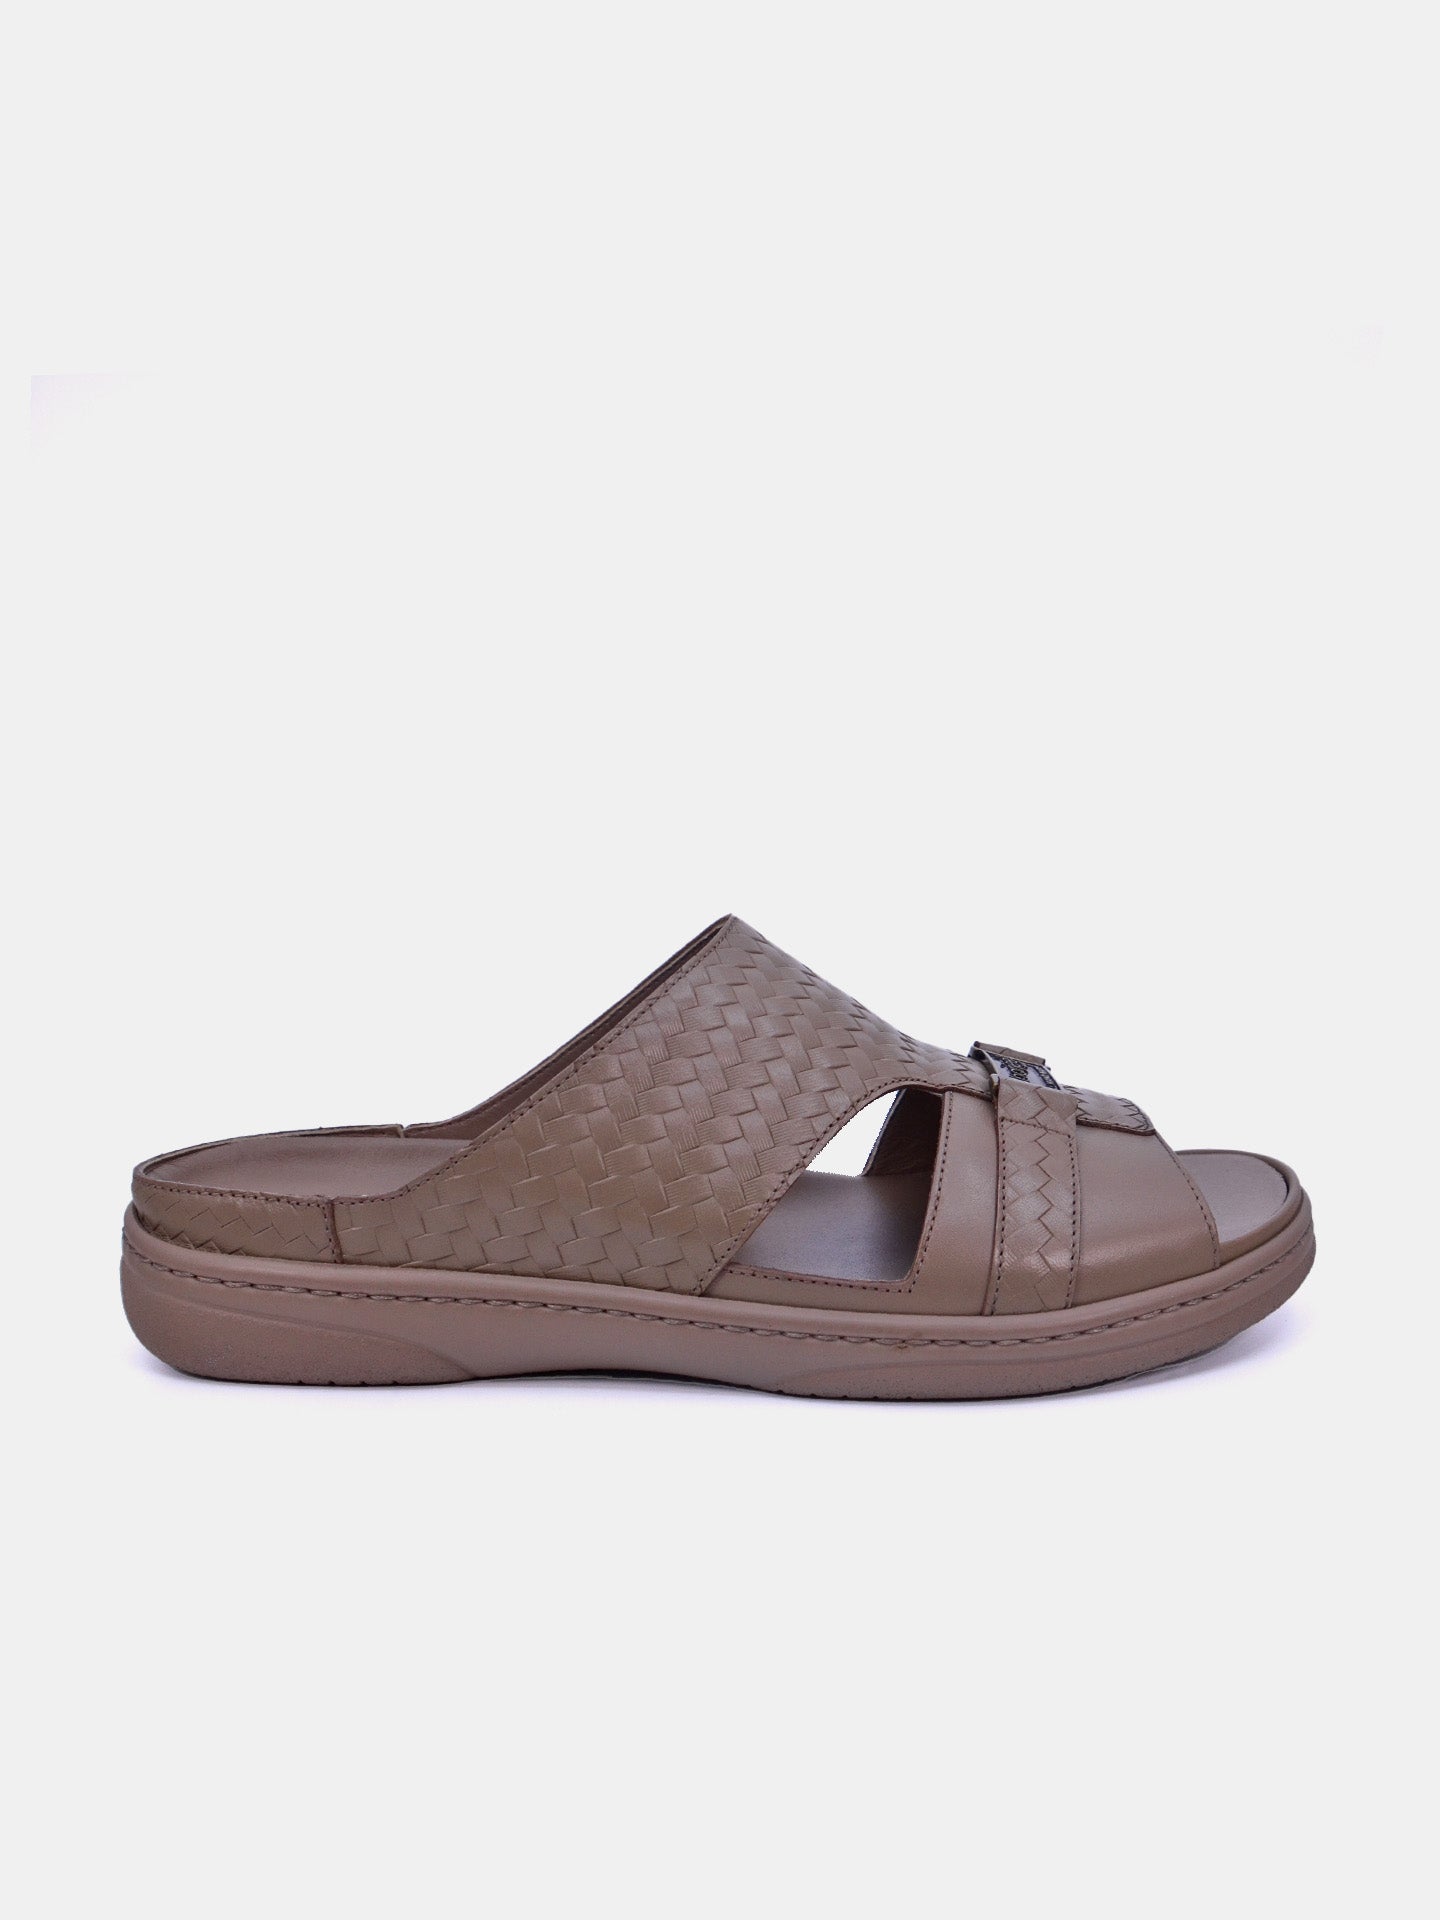 Barjeel Uno 2372 Men's Arabic Sandals #color_Beige